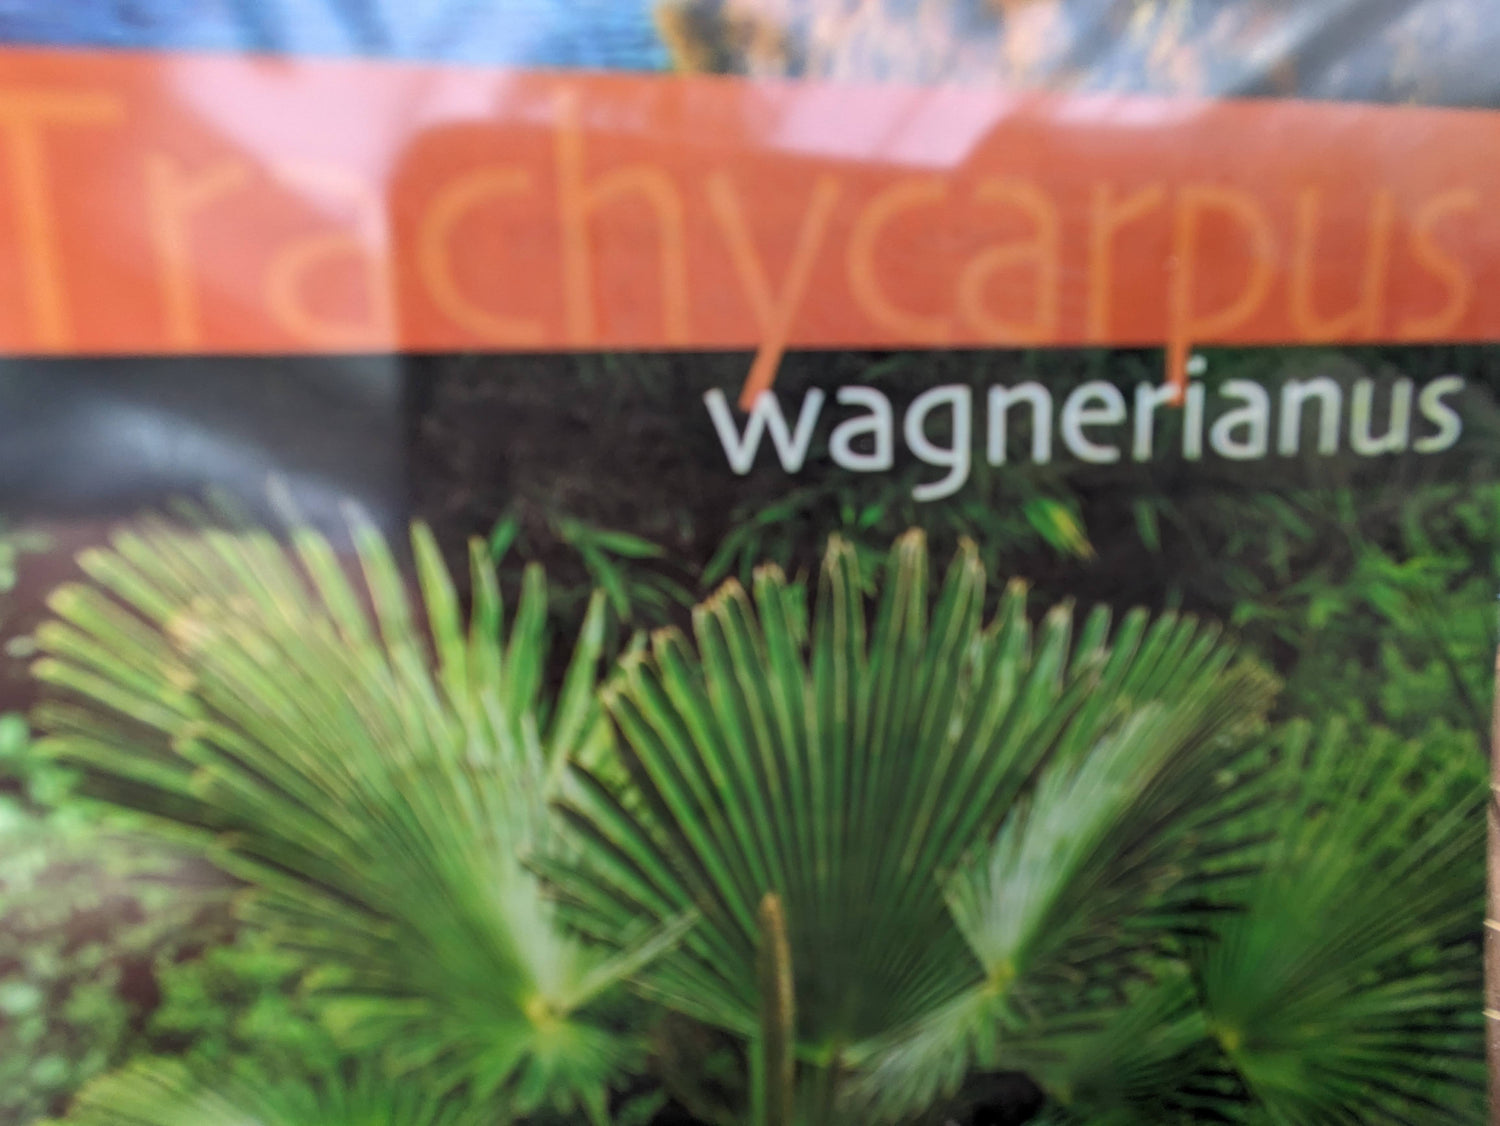 Etikett Wagnerianus